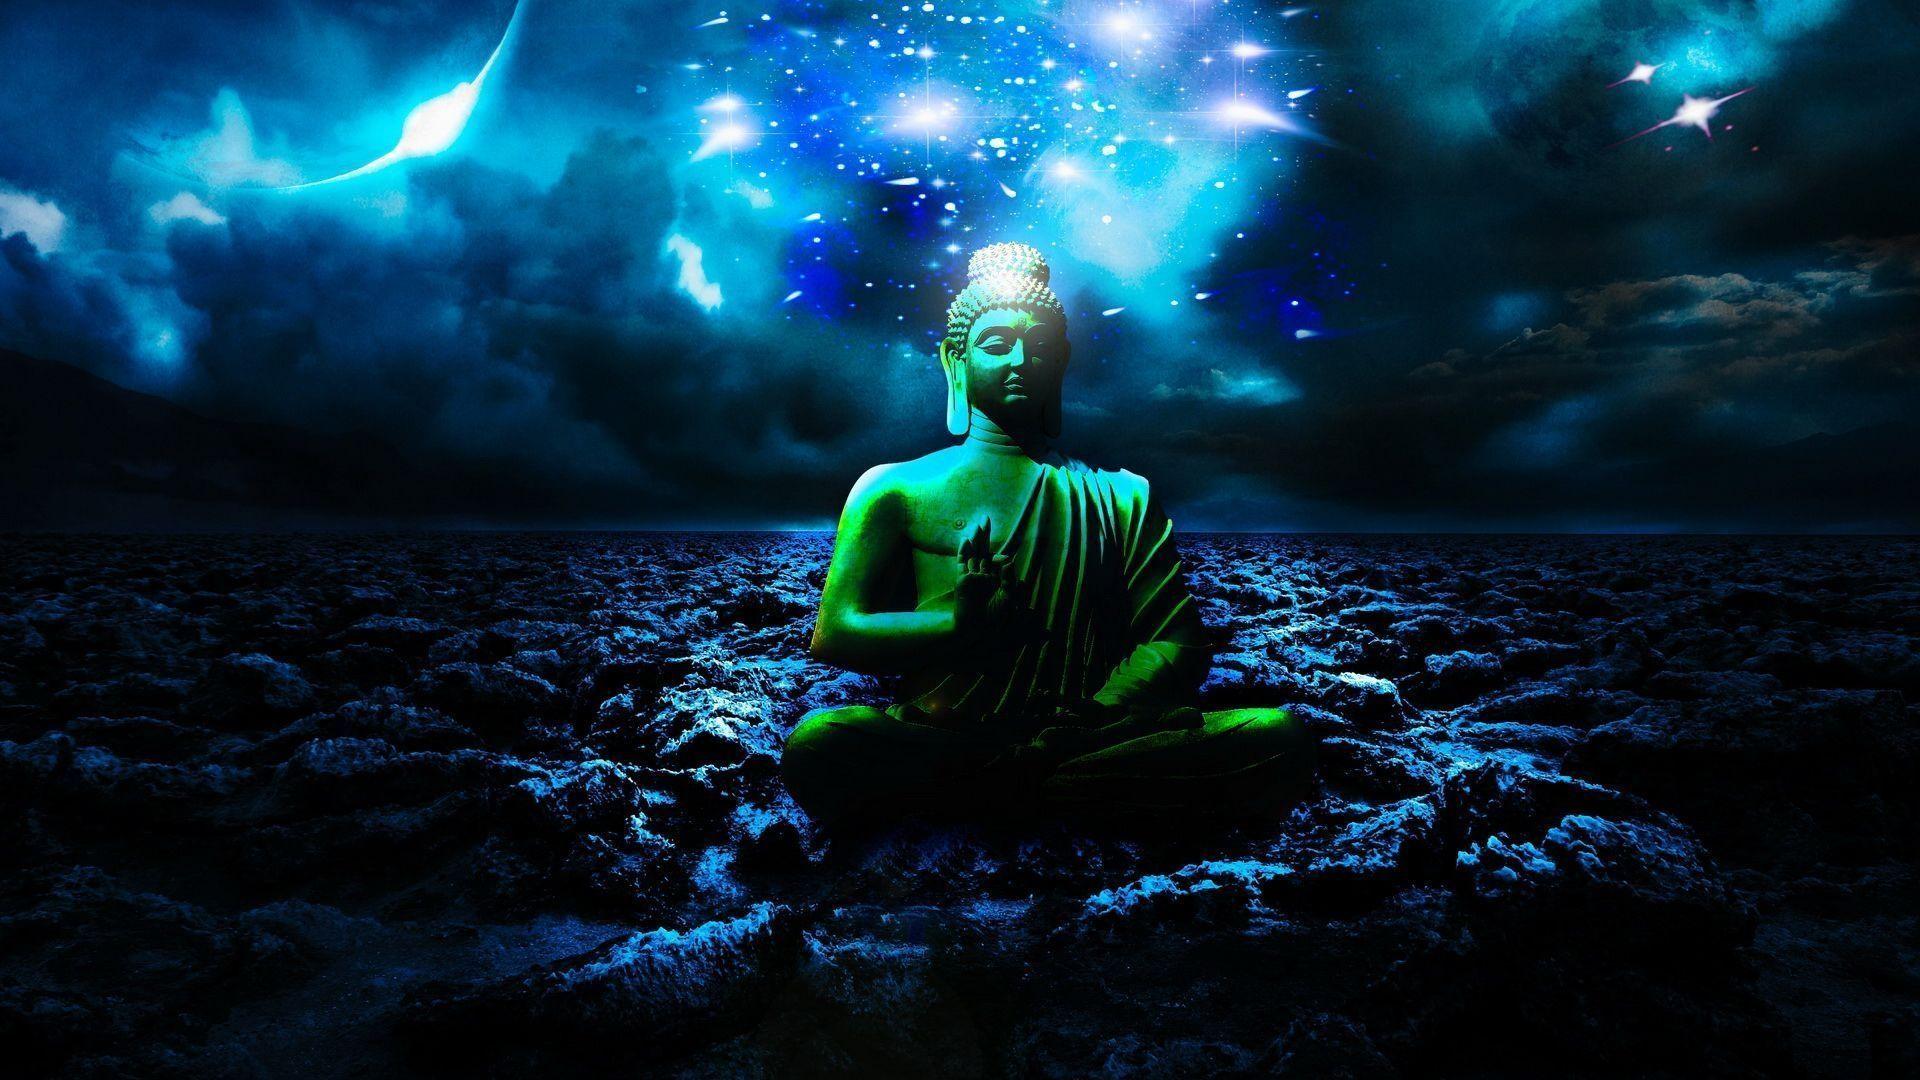 Hình nền phật: Hãy thưởng thức bức hình nền Phật trên điện thoại của bạn để mang đến cho bạn sự bình yên và sự thanh thản trong cuộc sống hối hả ngày nay. Tận hưởng không gian yên tĩnh và cảm nhận sự chìm vào thiền định khi ngắm nhìn bức hình nền Phật trang trí trên màn hình điện thoại của bạn.